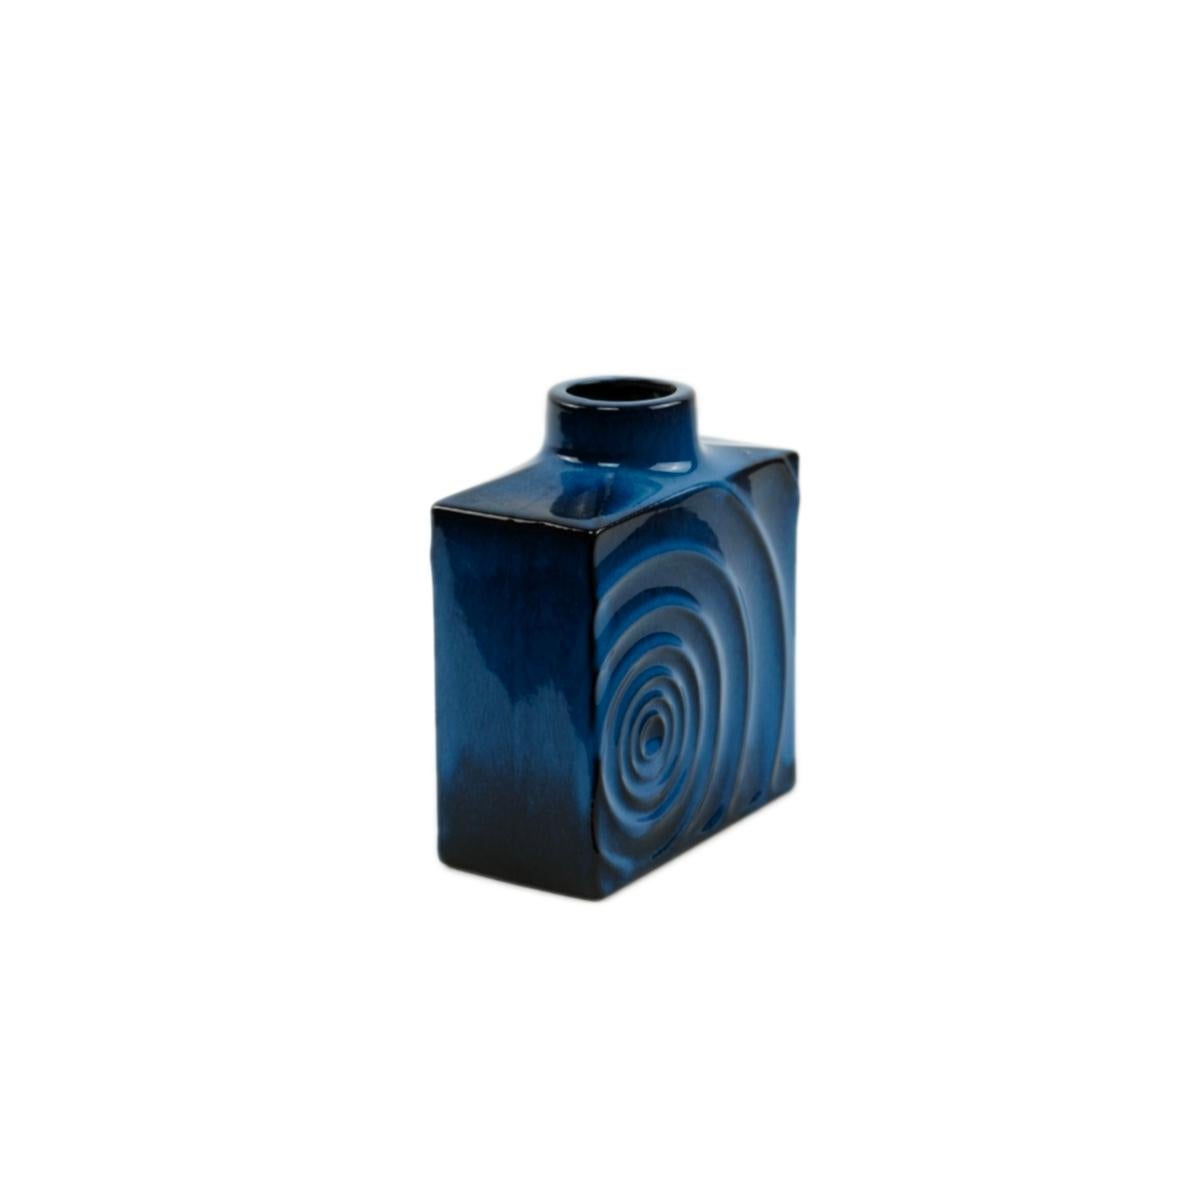 Set of 3 Cari Zalloni for Steuler ceramic blue-black „ Zyklon“ vases  1060s For Sale 3